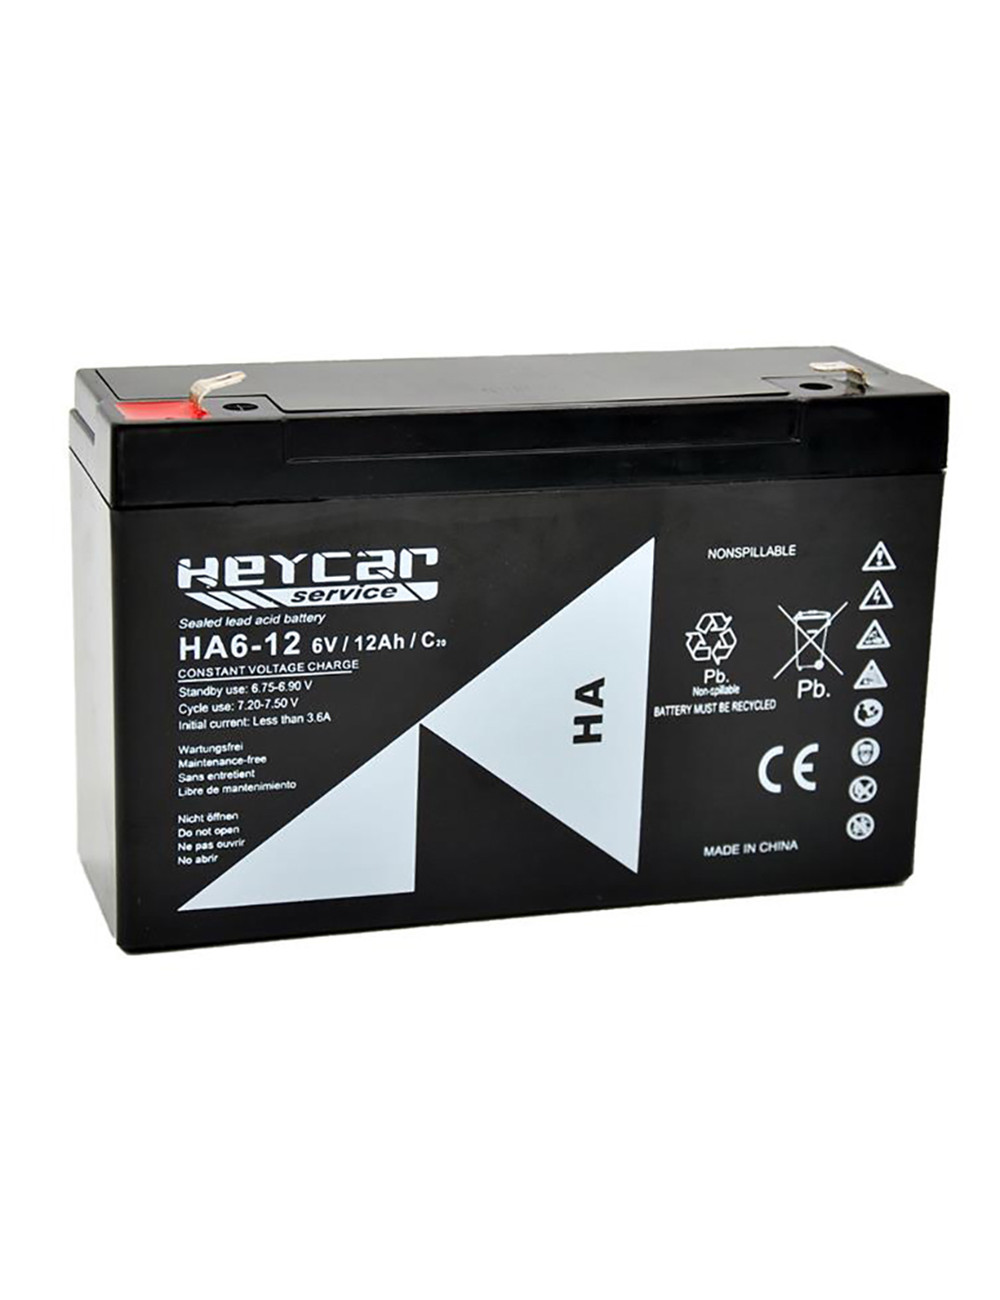 Batería para coches, motos, quads y triciclos eléctricos de juguete 6V 12Ah C20 Heycar Service HA6-12 - HA6-12 -  - 843523120321